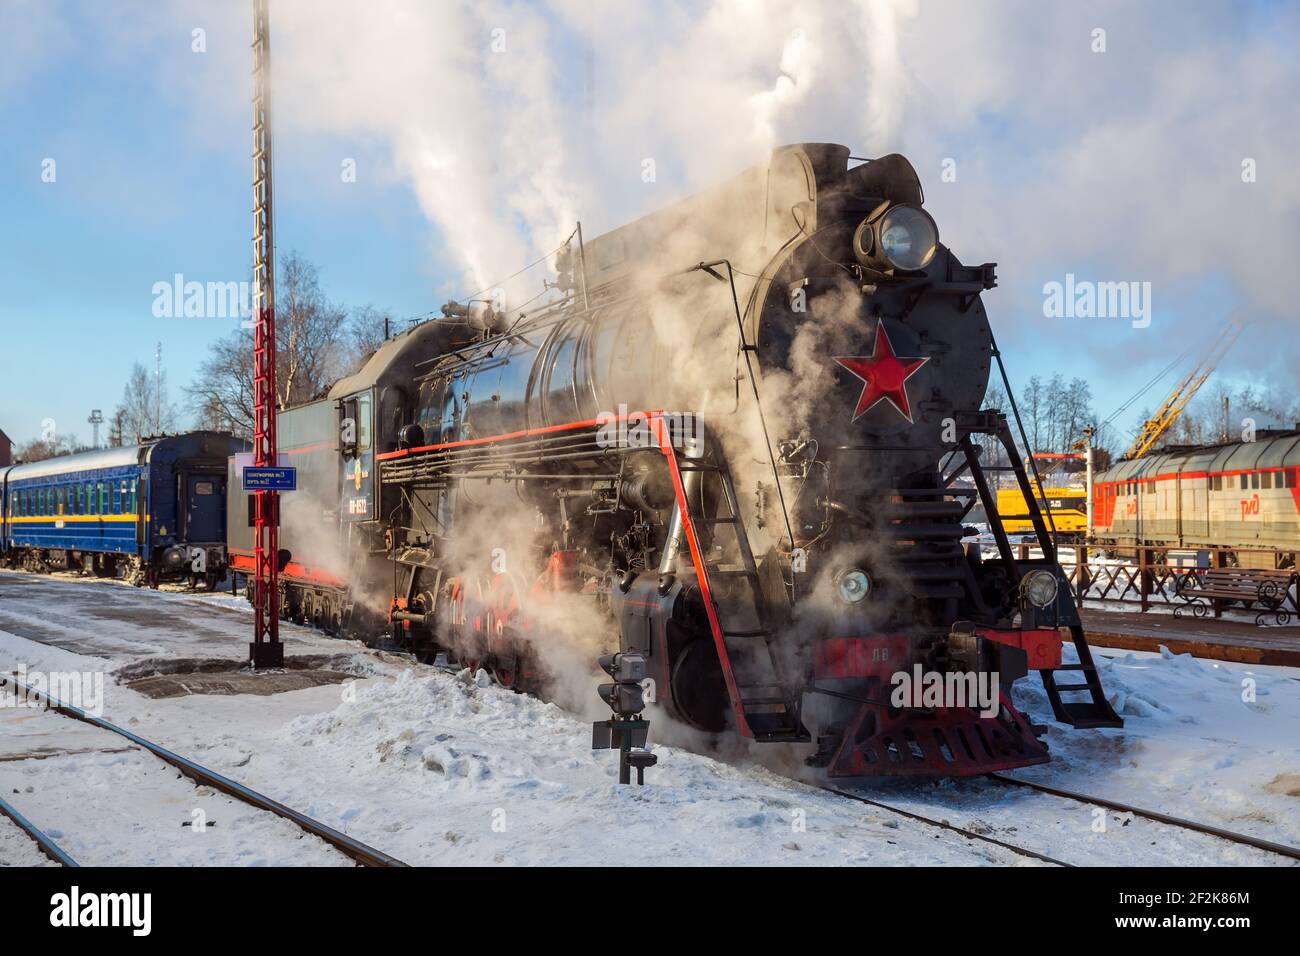 SORTAVALA, RUSSIE - 10 MARS 2021 : le train rétro touristique sur locomotive à vapeur part de la gare de Sortavala jusqu'au parc de la montagne de Ruskeala Banque D'Images